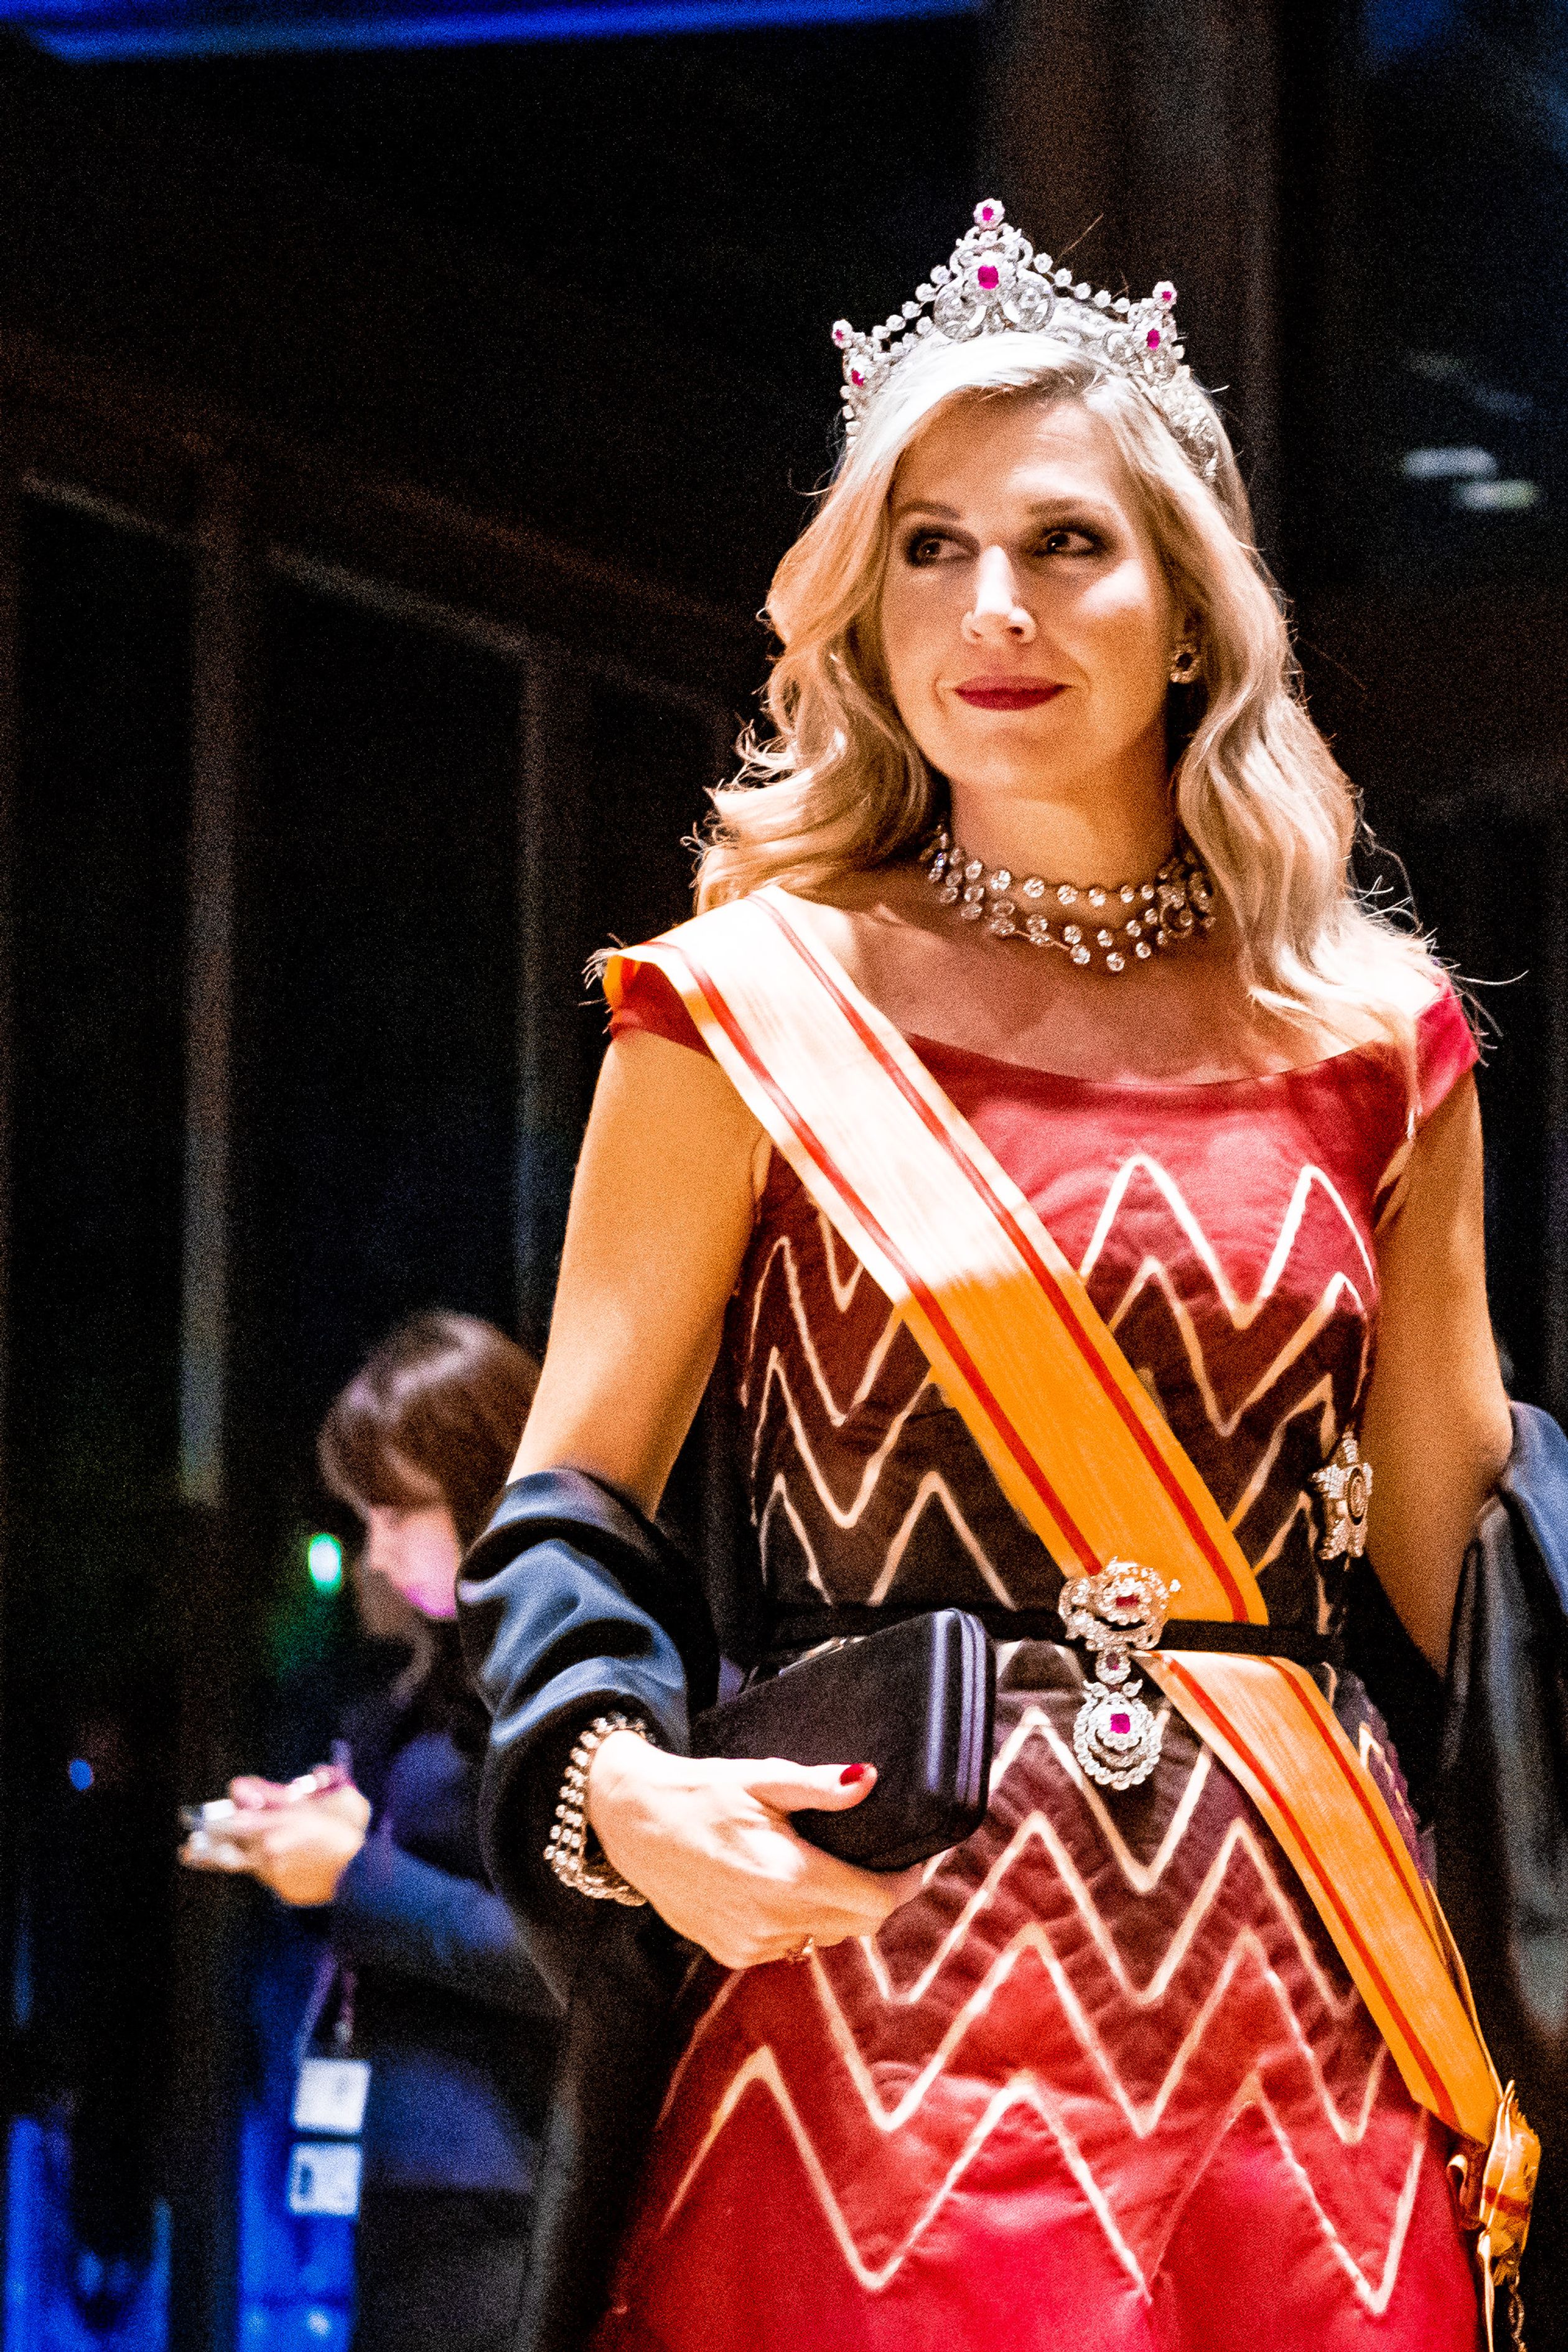 Koningin Máxima draagt tijdens het staatsbanket een nieuwe avondjurk met boothals en zigzagpatroon